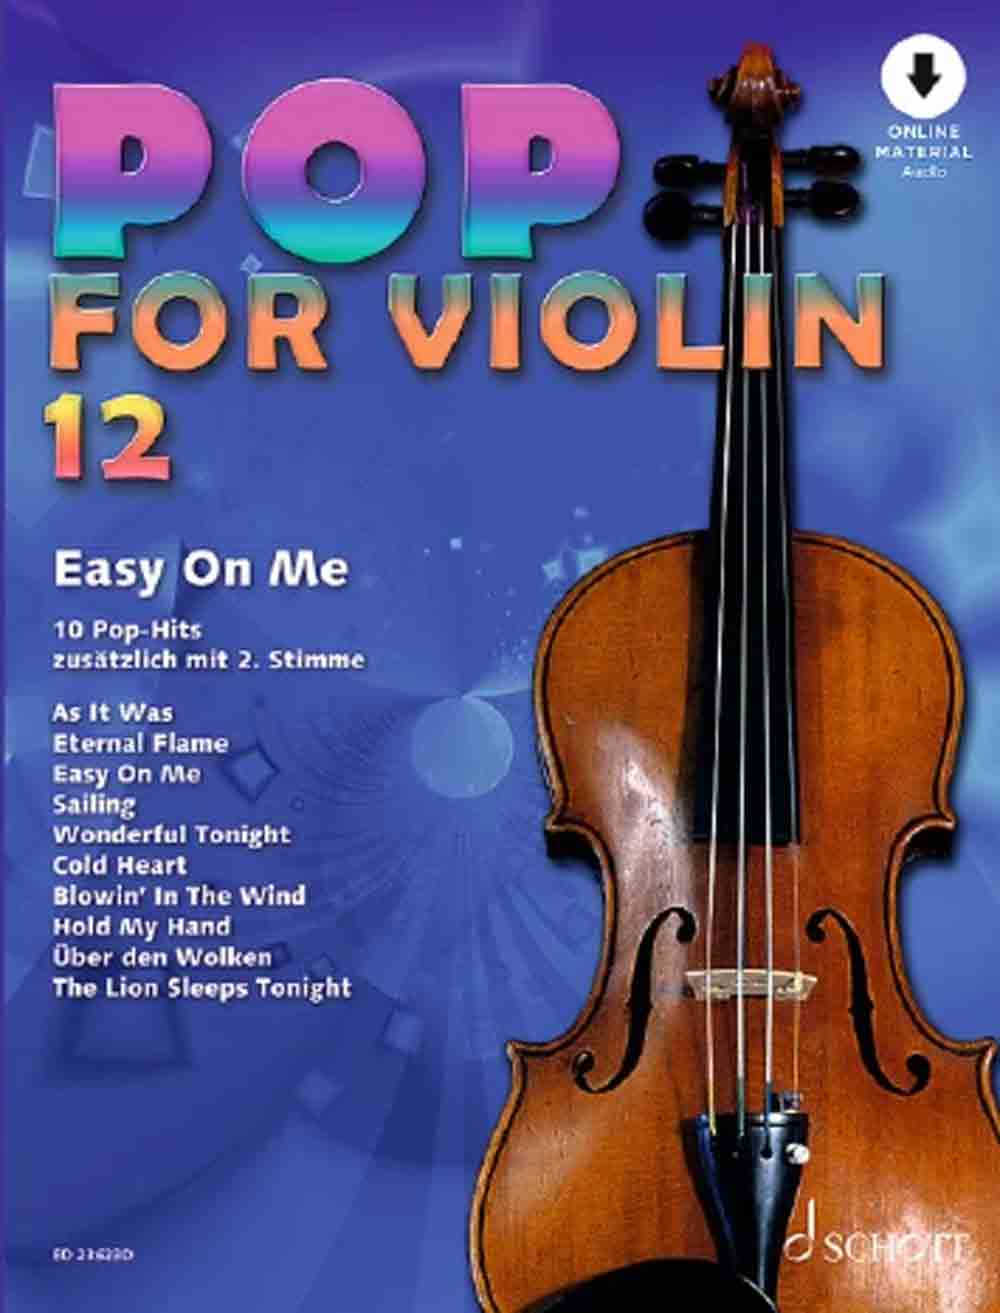 Wundervolle Violine, mehr Spielspaß mit Popmusik für 1 bis 2 Spieler, Neuerscheinung bei Schott Music